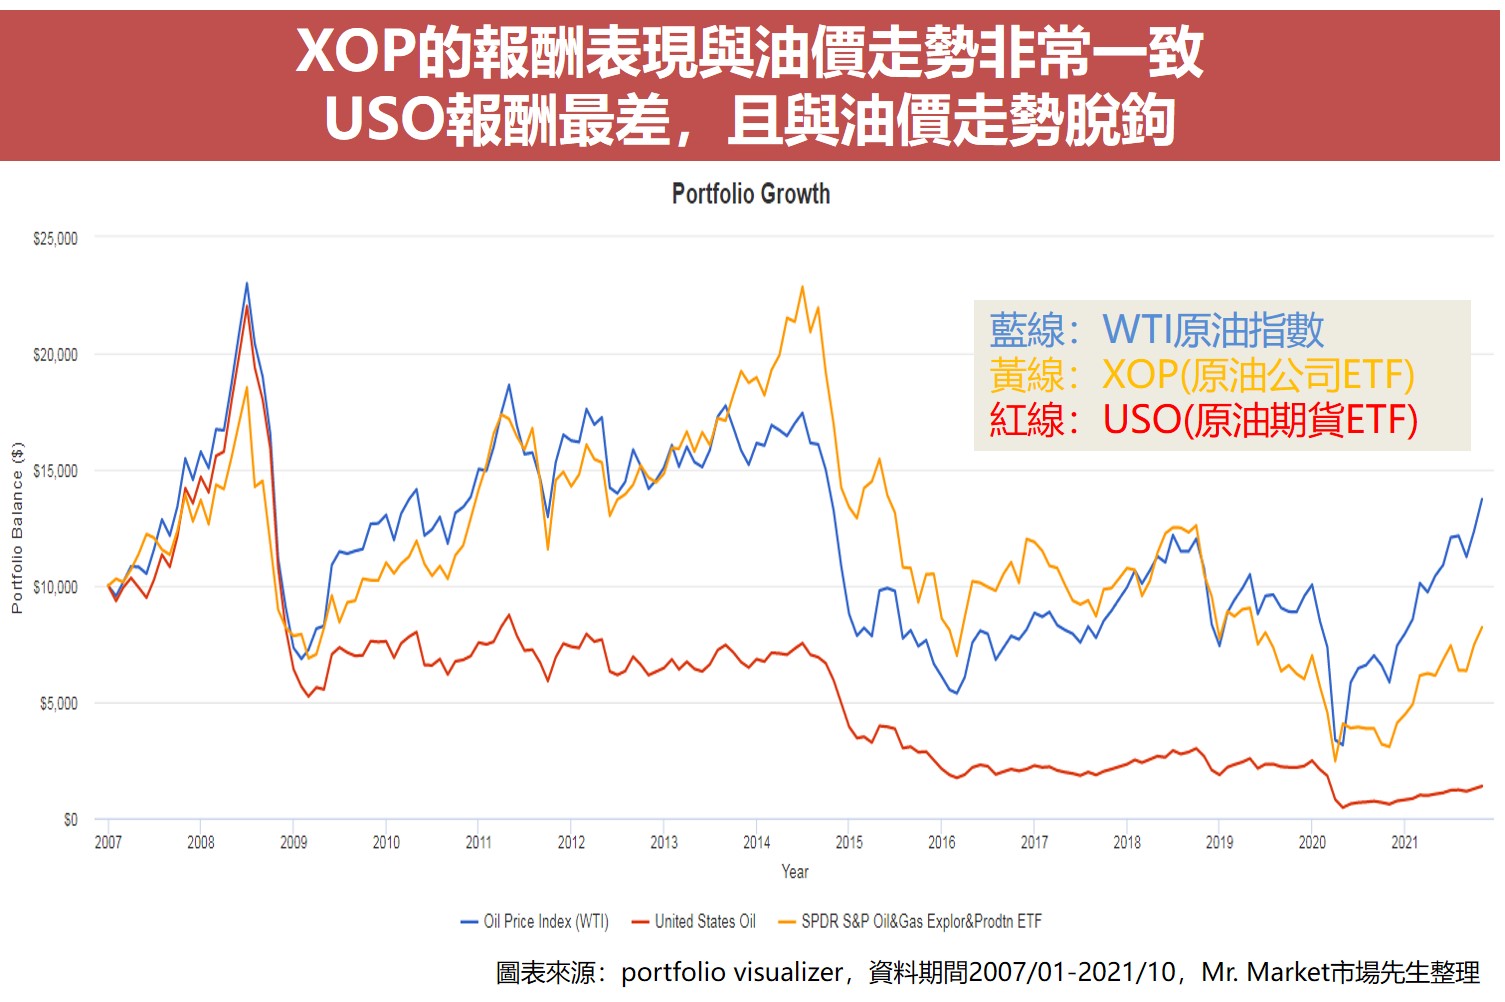 XOP的報酬表現與油價走勢非常一致